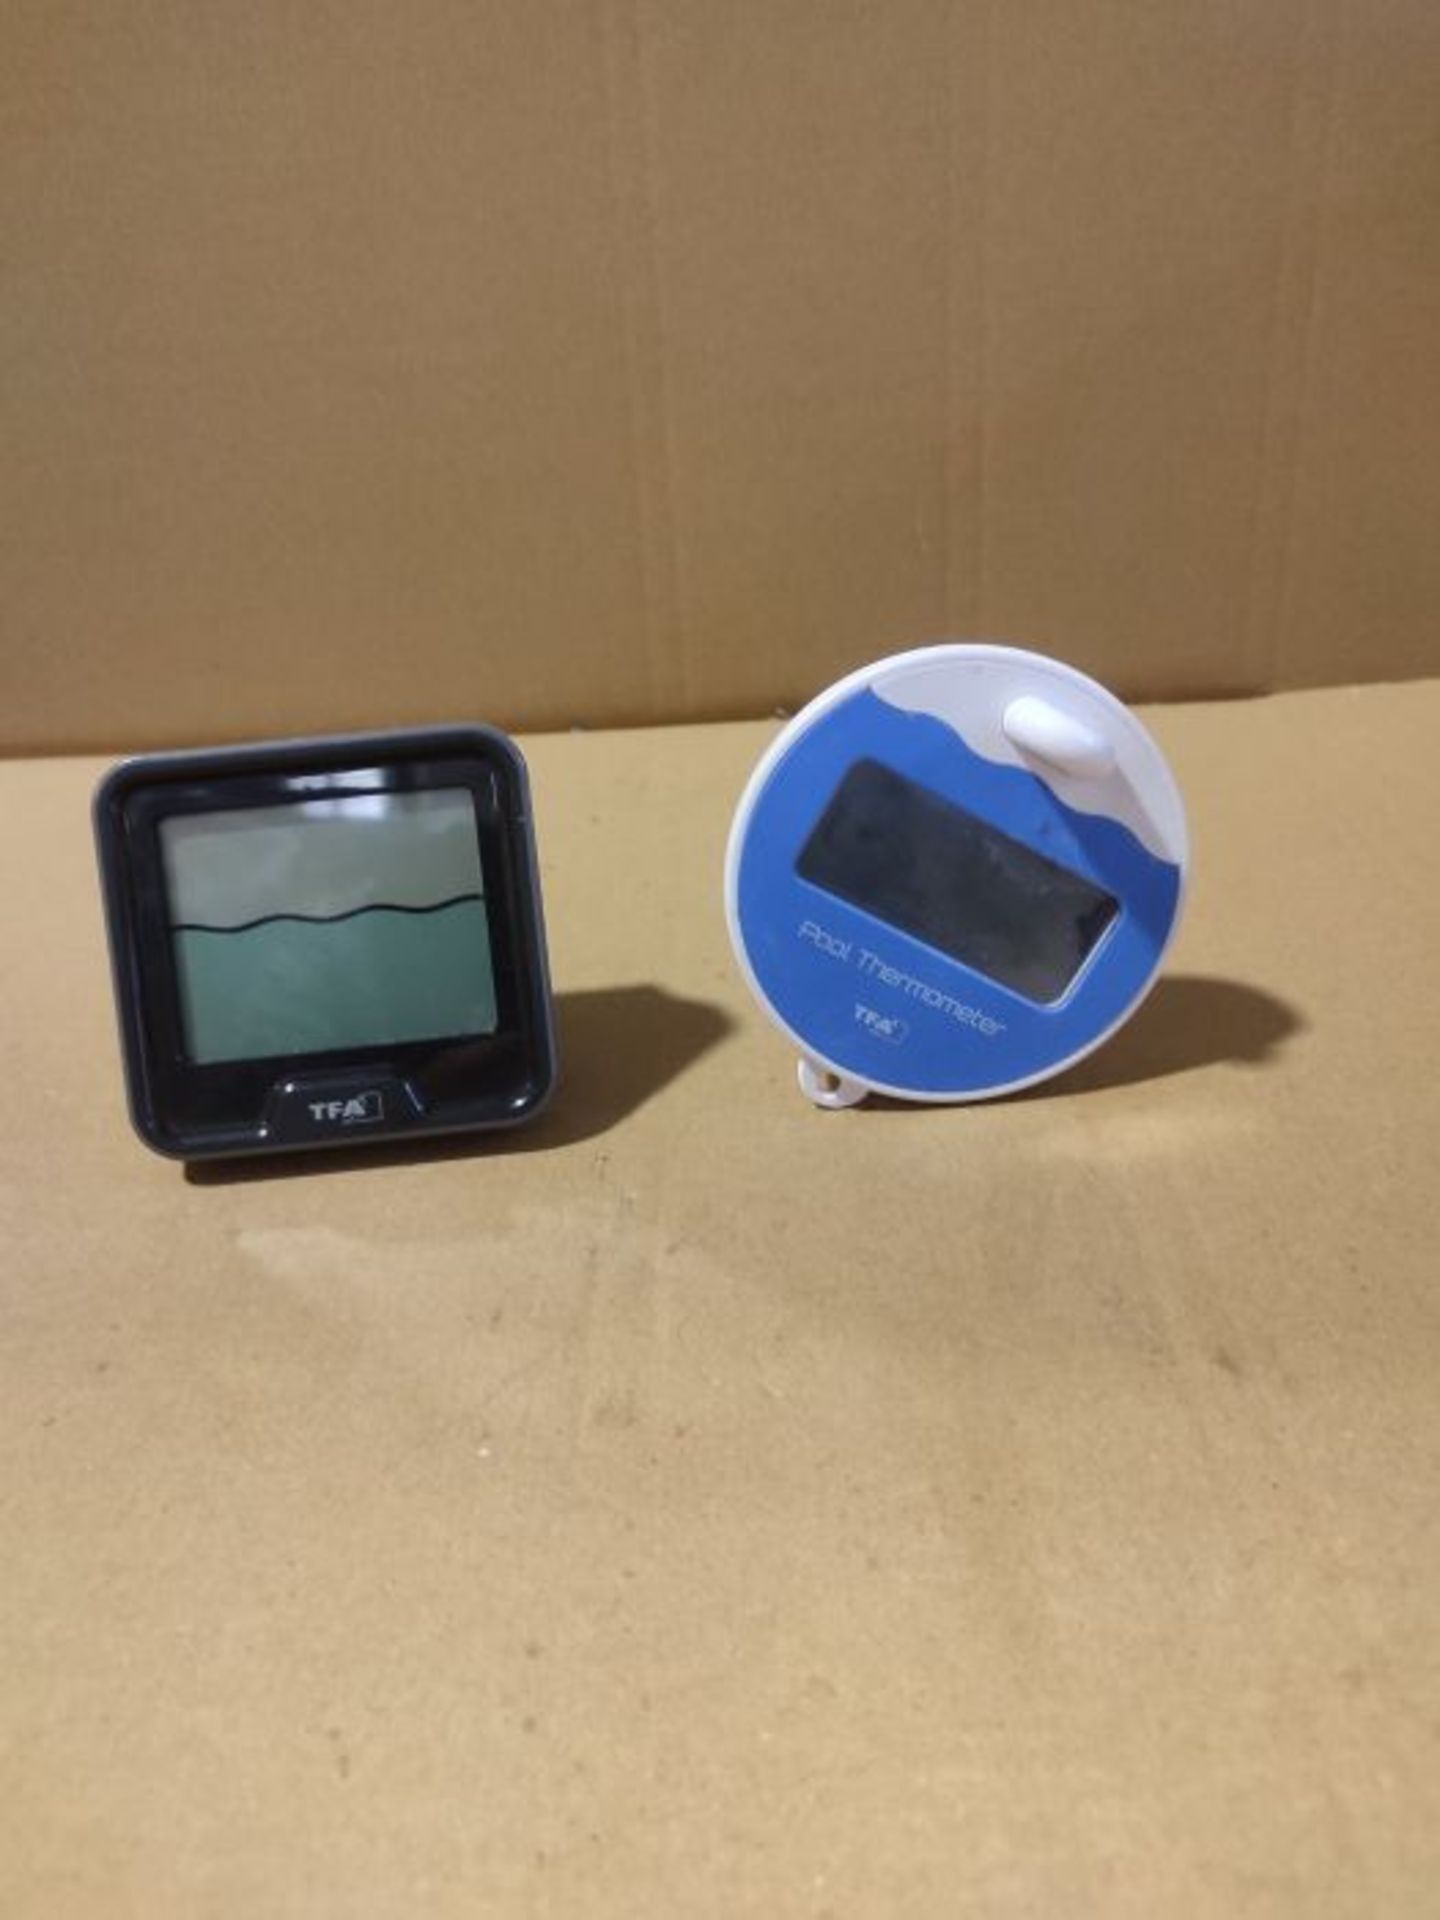 TFA Dostmann Marbella Wireless Pool Thermometer, Black, L110 x W110 x H210 mm - Image 3 of 3